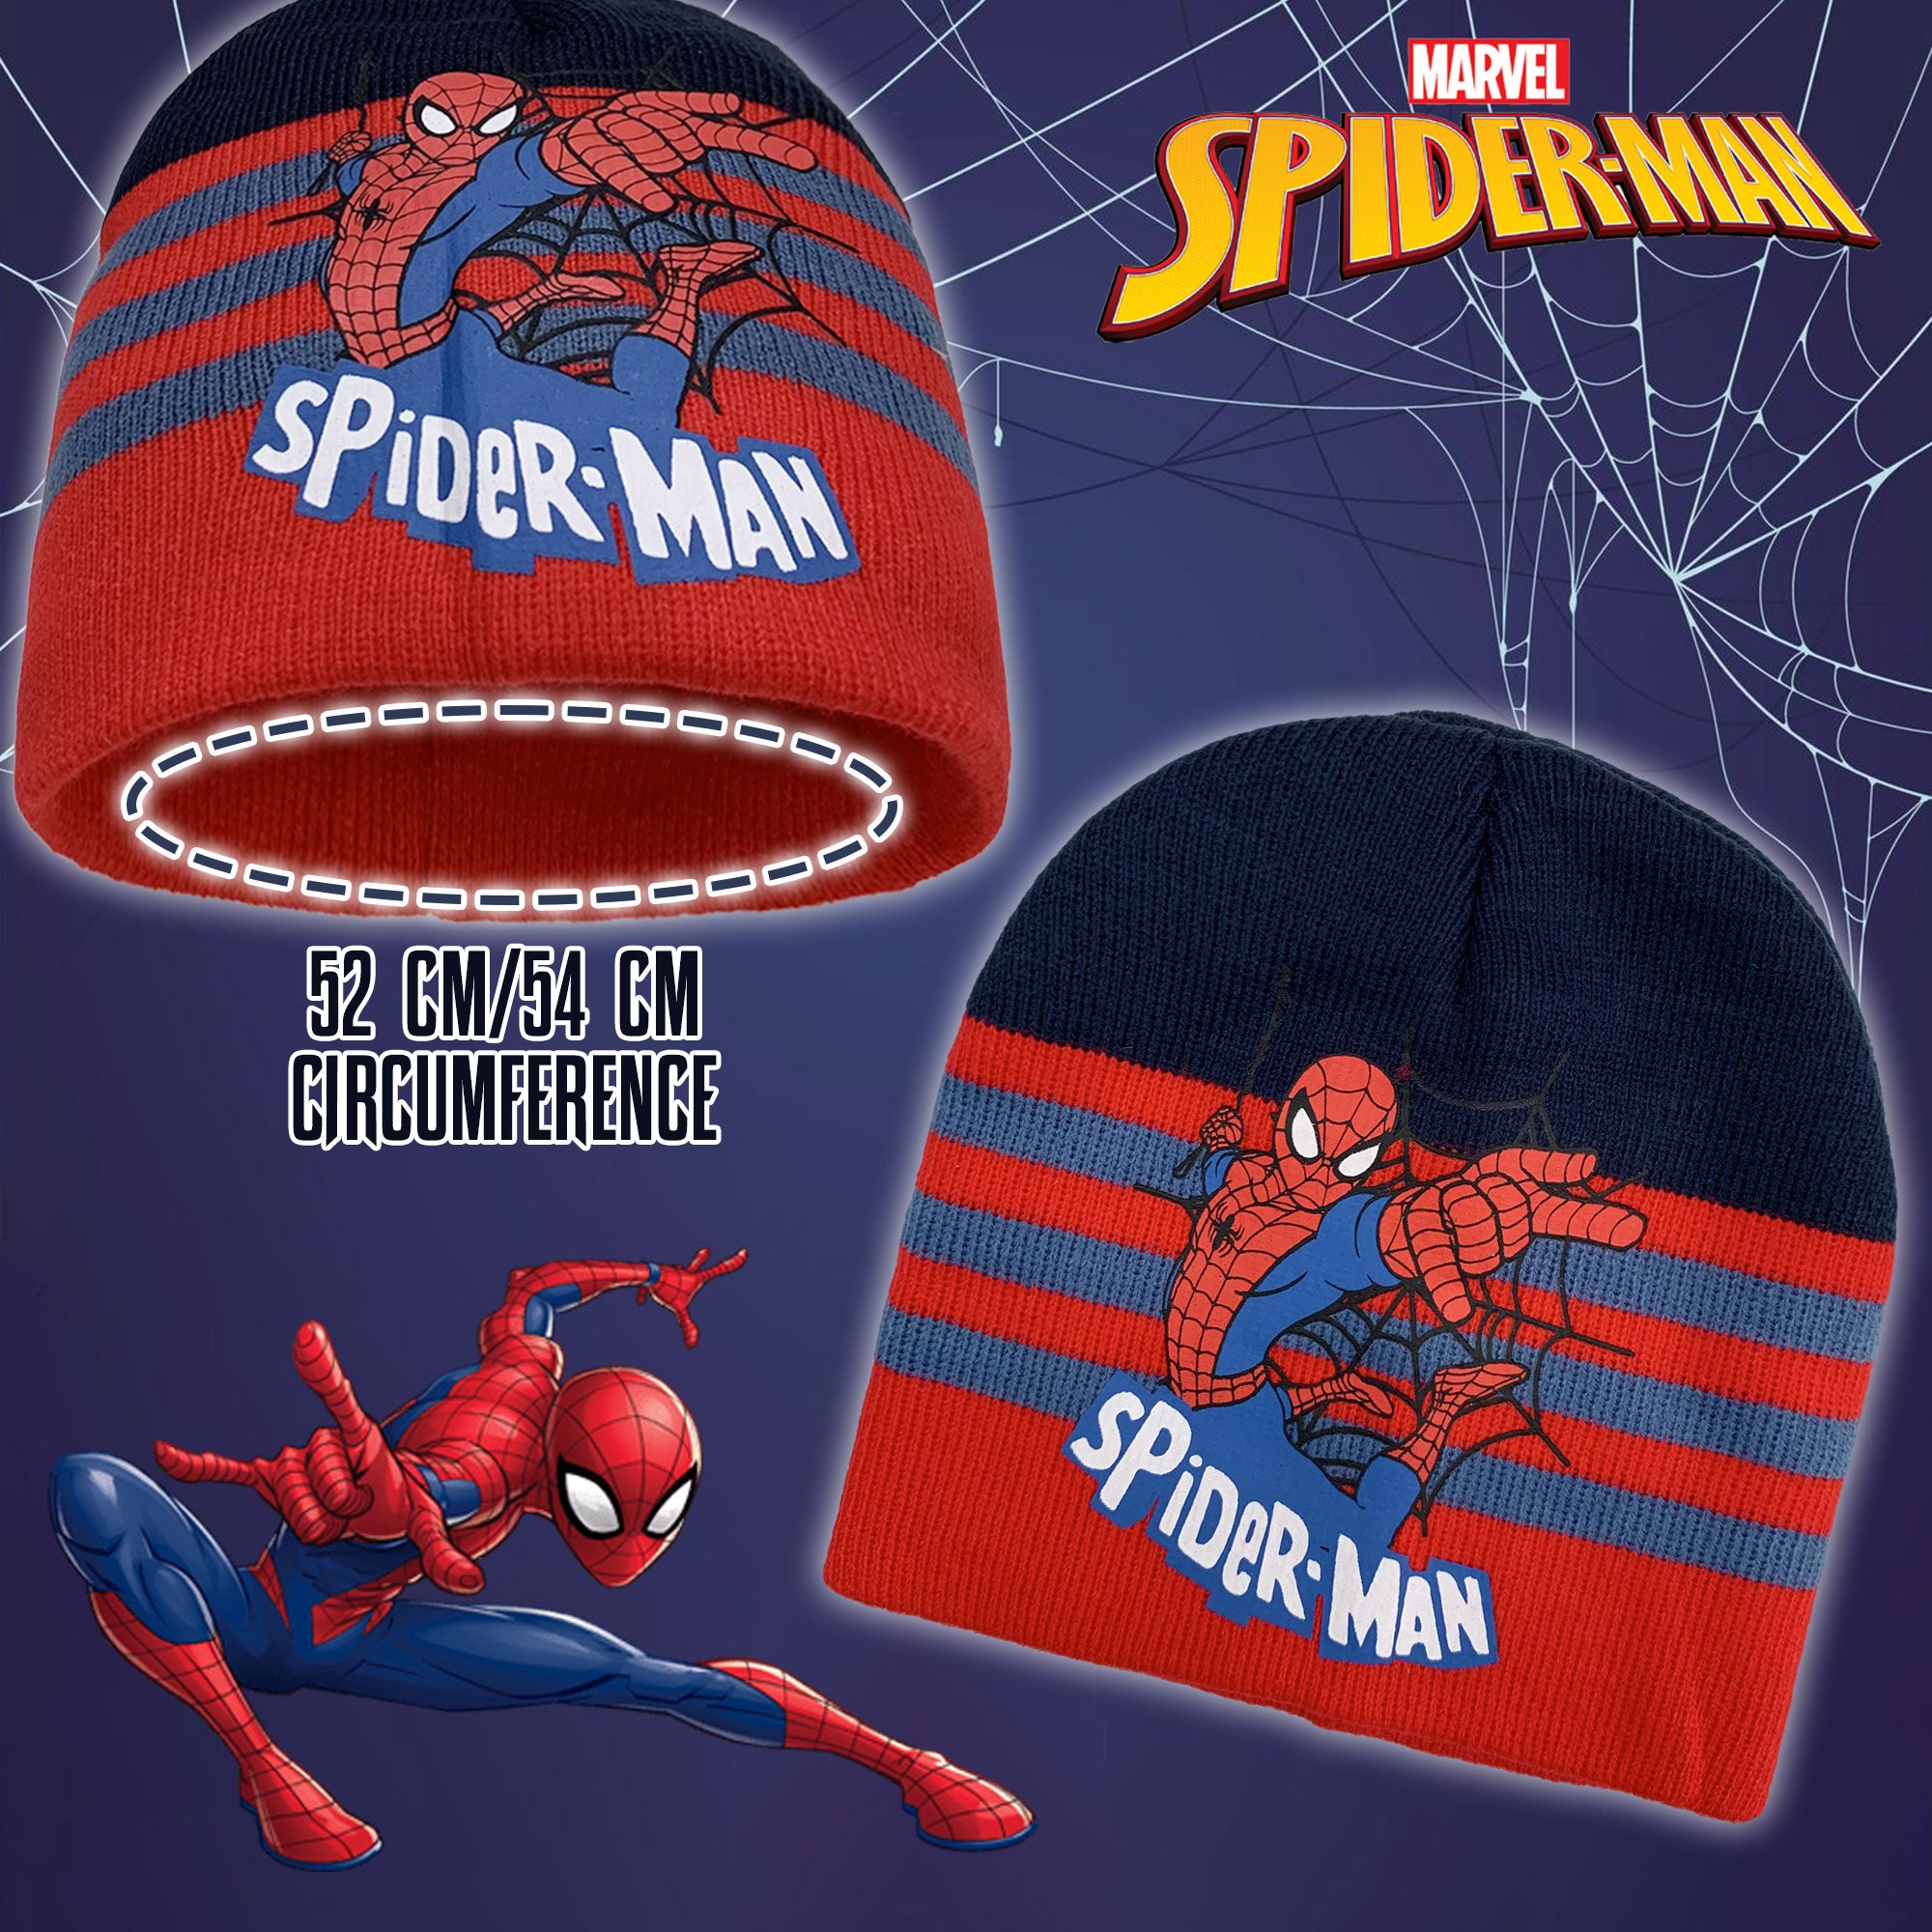 Cappello Marvel Spiderman per bambino invernale cappellino bimbo 6233